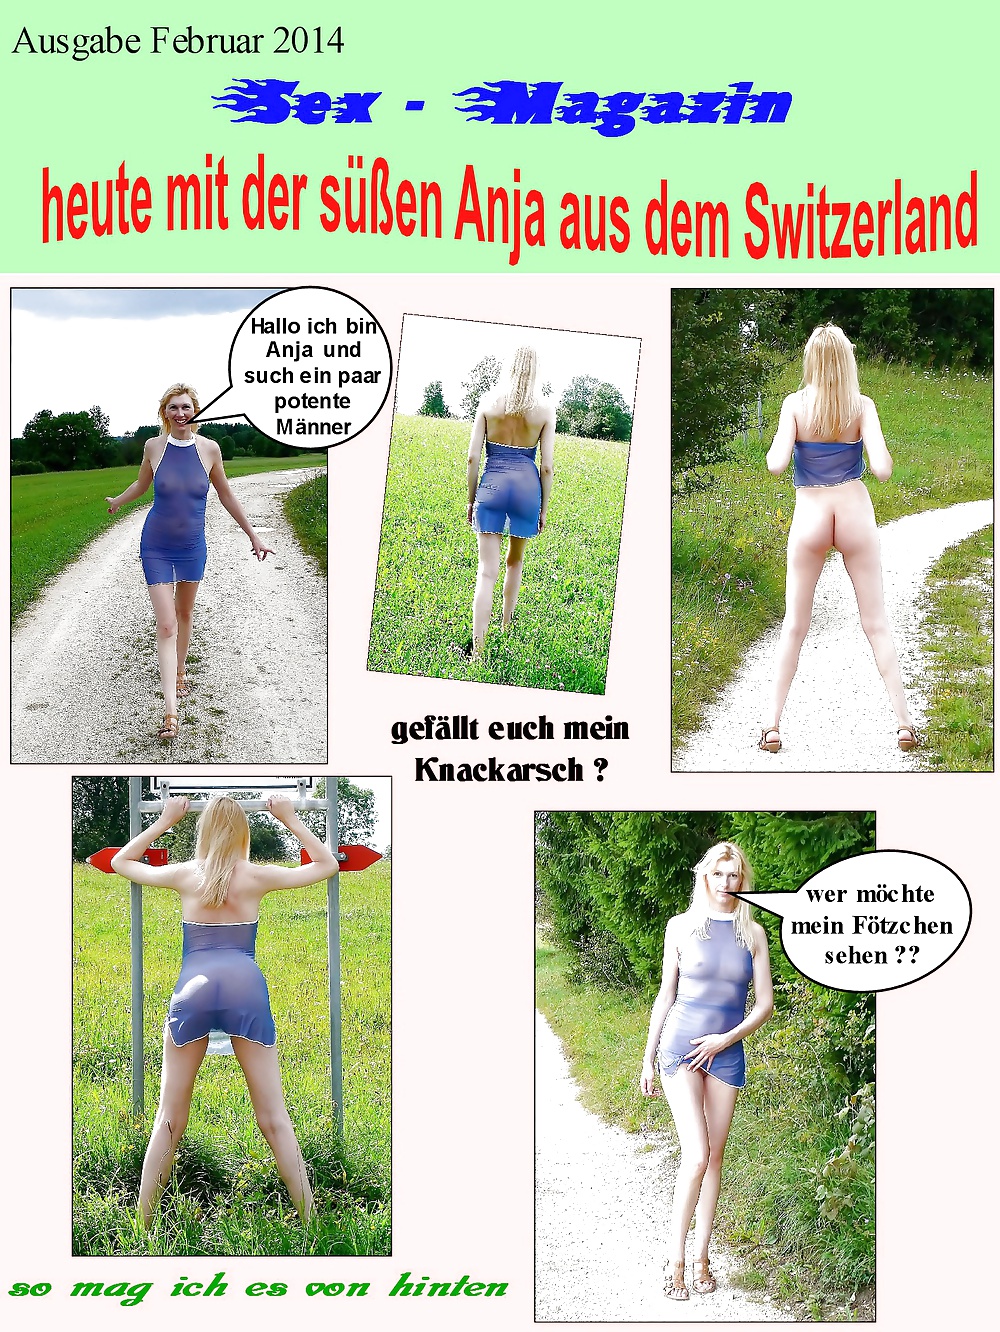 Anja aus der schweiz
 #24226759